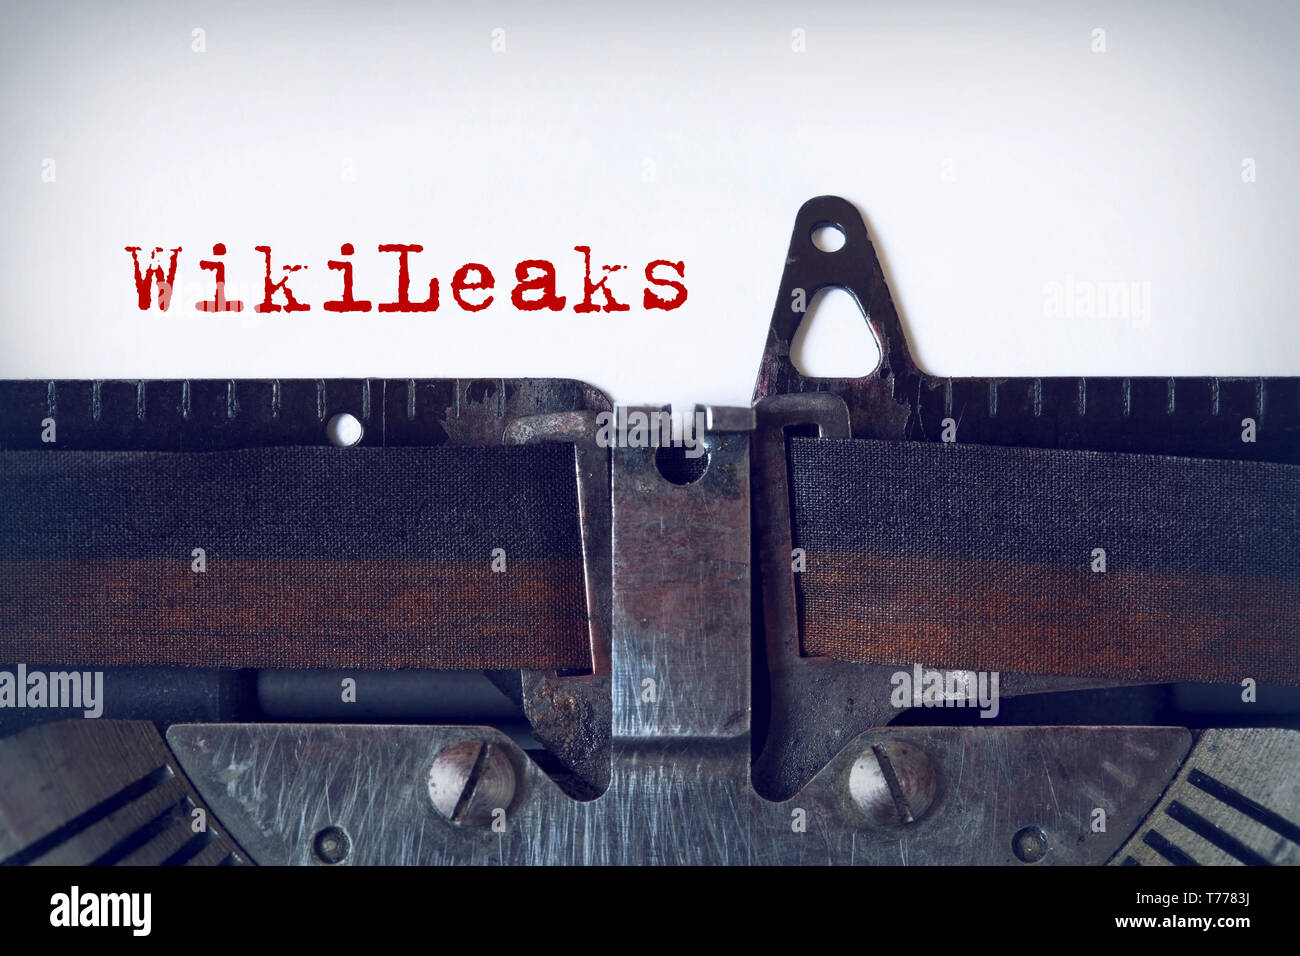 WikiLeaks écrit sur une machine à écrire vintage Banque D'Images